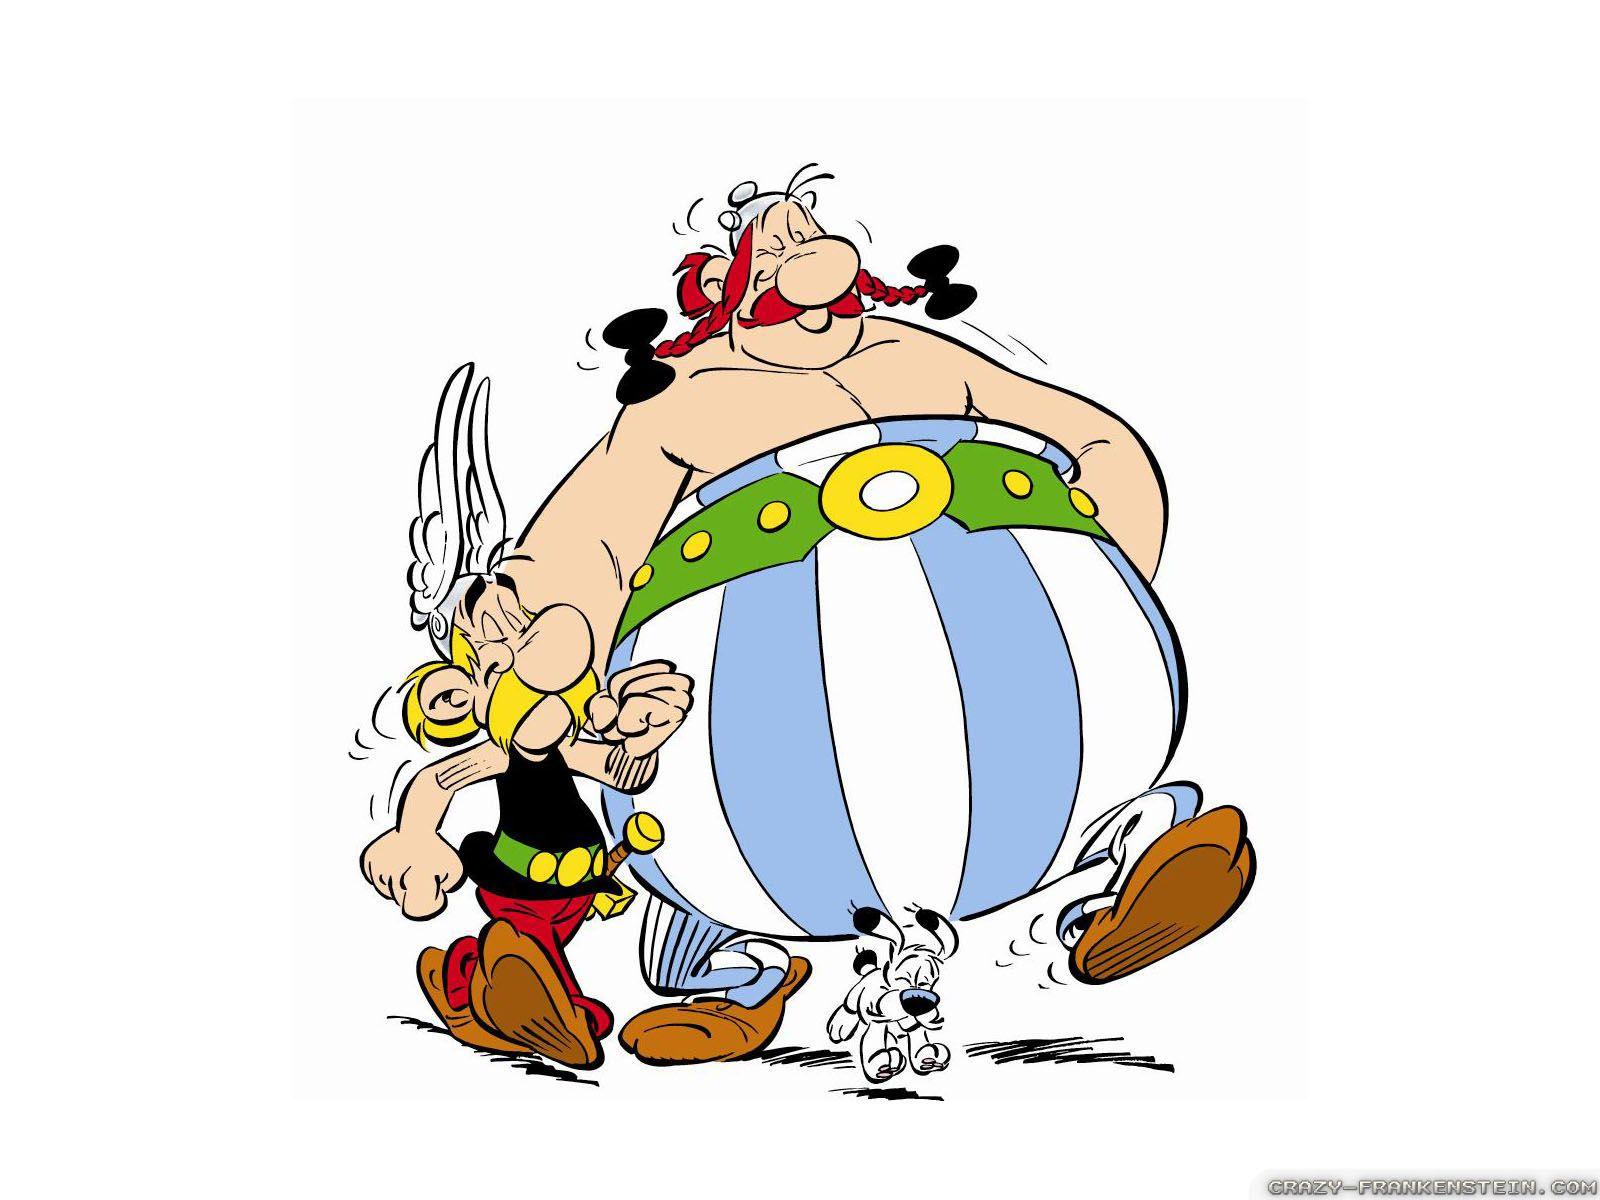 Asterix and Obelix wallpaper